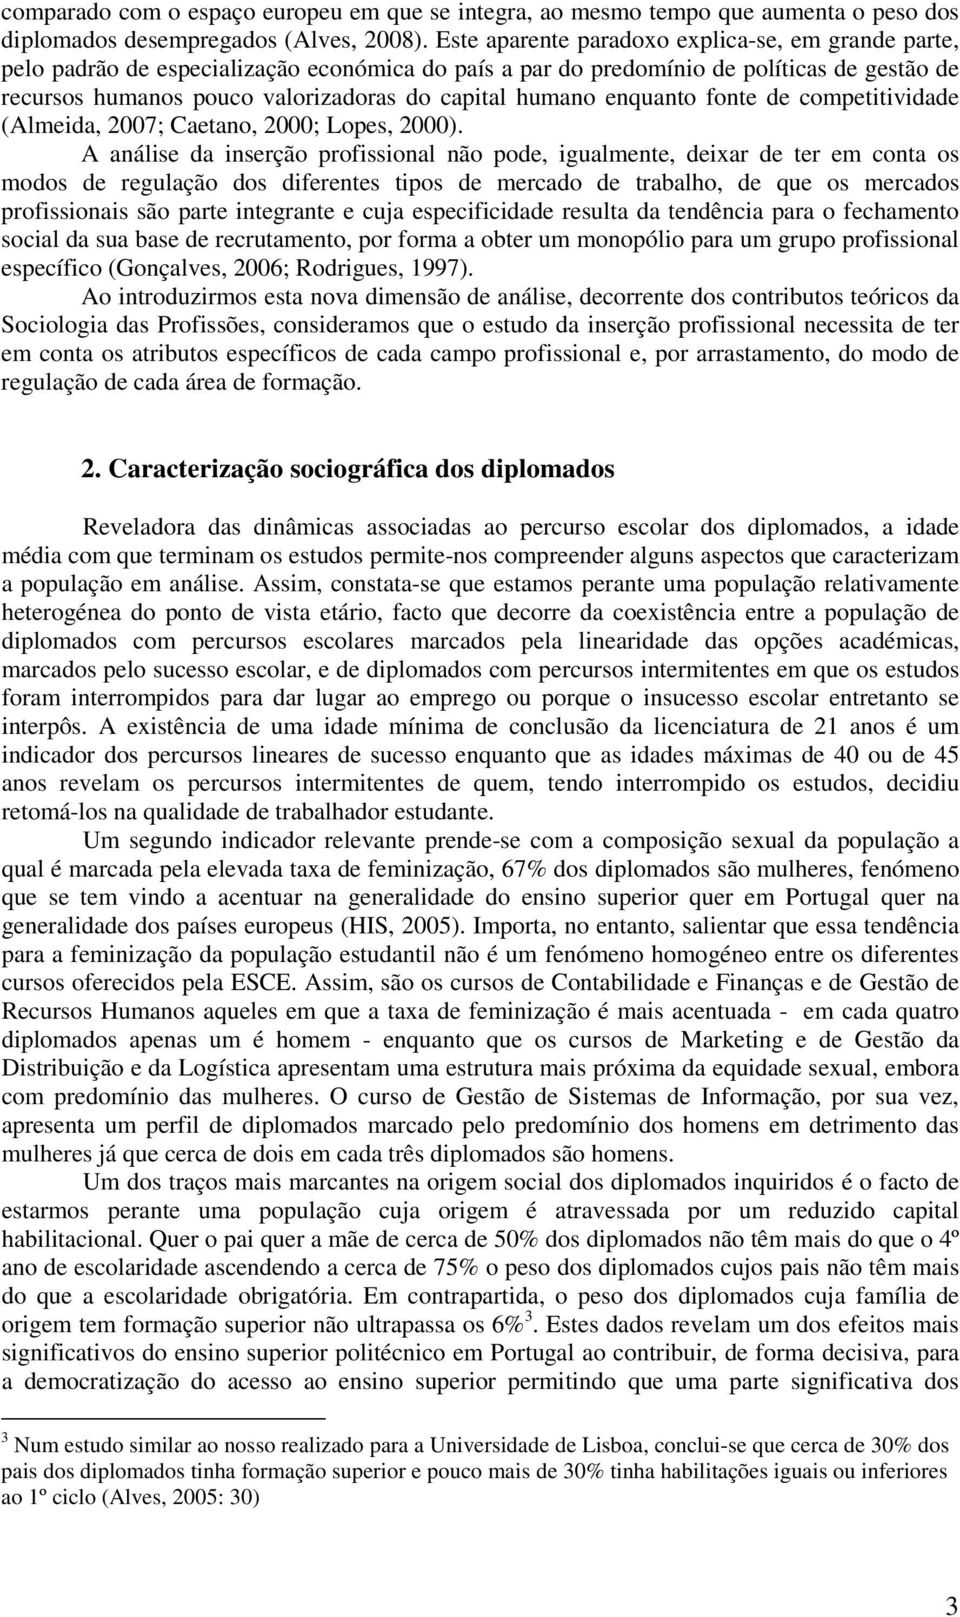 humano enquanto fonte de competitividade (Almeida, 2007; Caetano, 2000; Lopes, 2000).